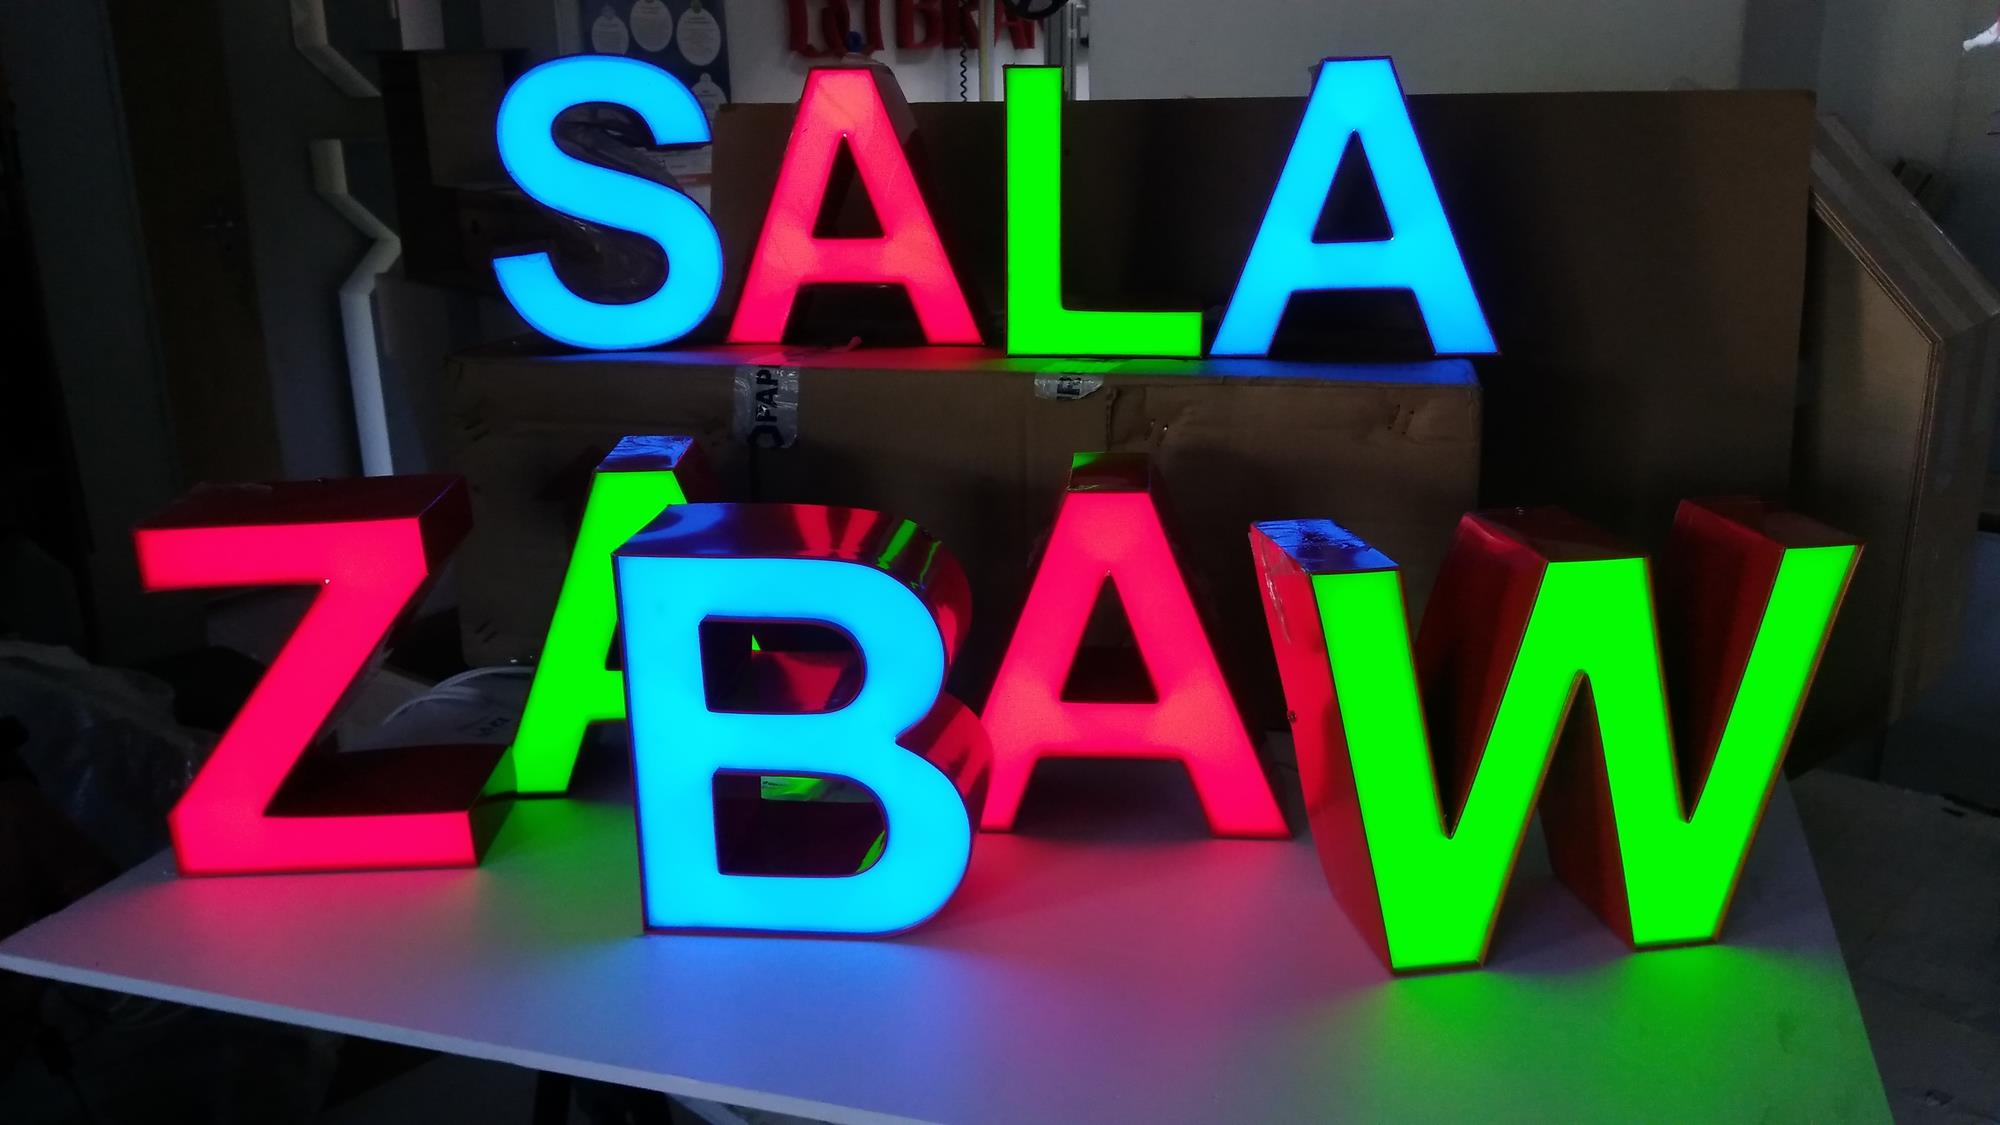 SALA ZABAW - liltery 3D podświetlane z bokami ALU